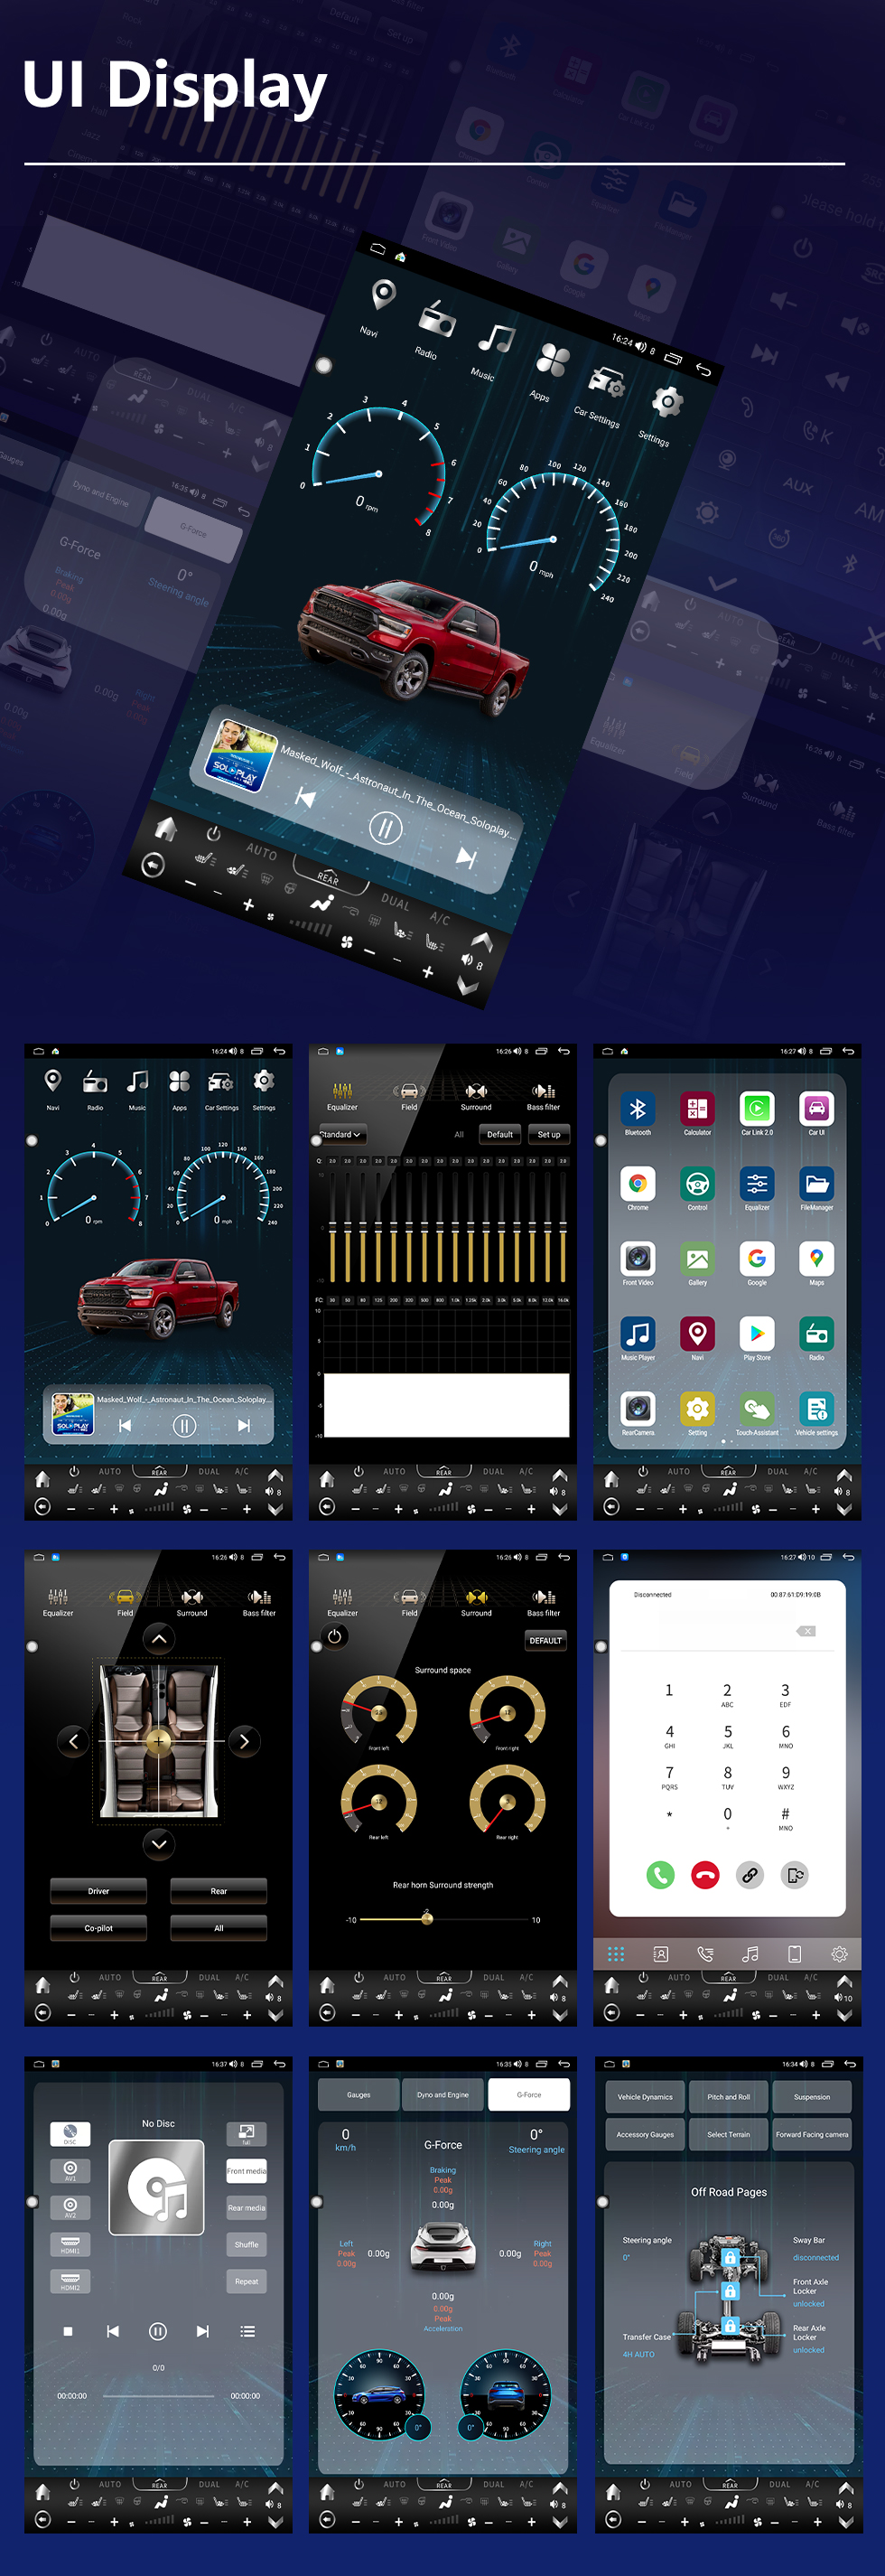 Seicane Carplay 13,6-дюймовый сенсорный экран Android 10.0 Мультимедиа для JEEP WRANGLER 2018-2021 гг. Радио Android Auto с системой GPS-навигации Поддержка Bluetooth Камера заднего вида WIFI OBD2